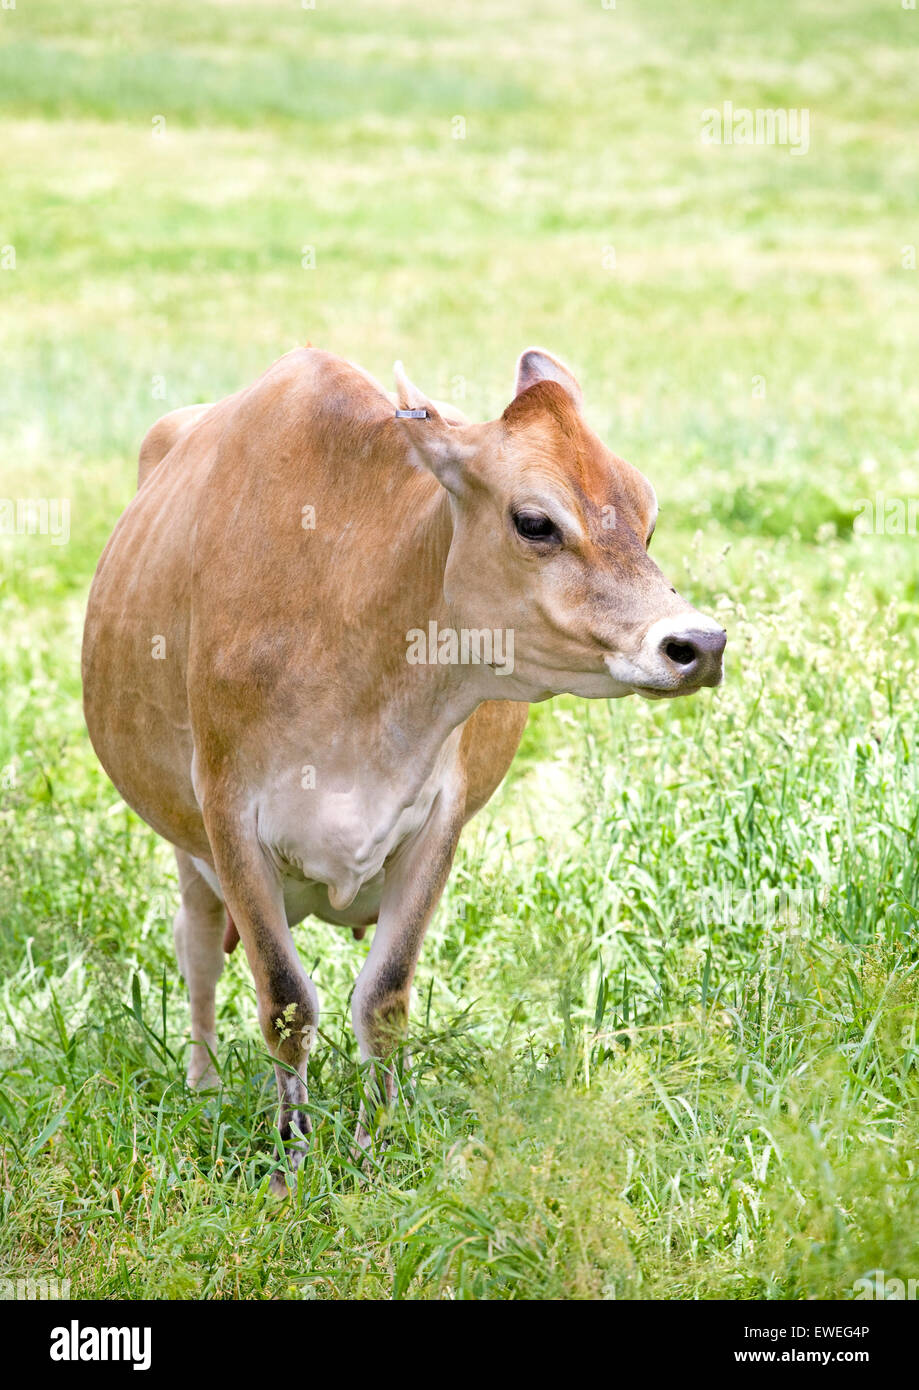 Una vaca de Jersey, una de las razas de ganado lechero originalmente cultivada en las Islas del Canal de Jersey. Tla raza es popular por la alta butte Foto de stock